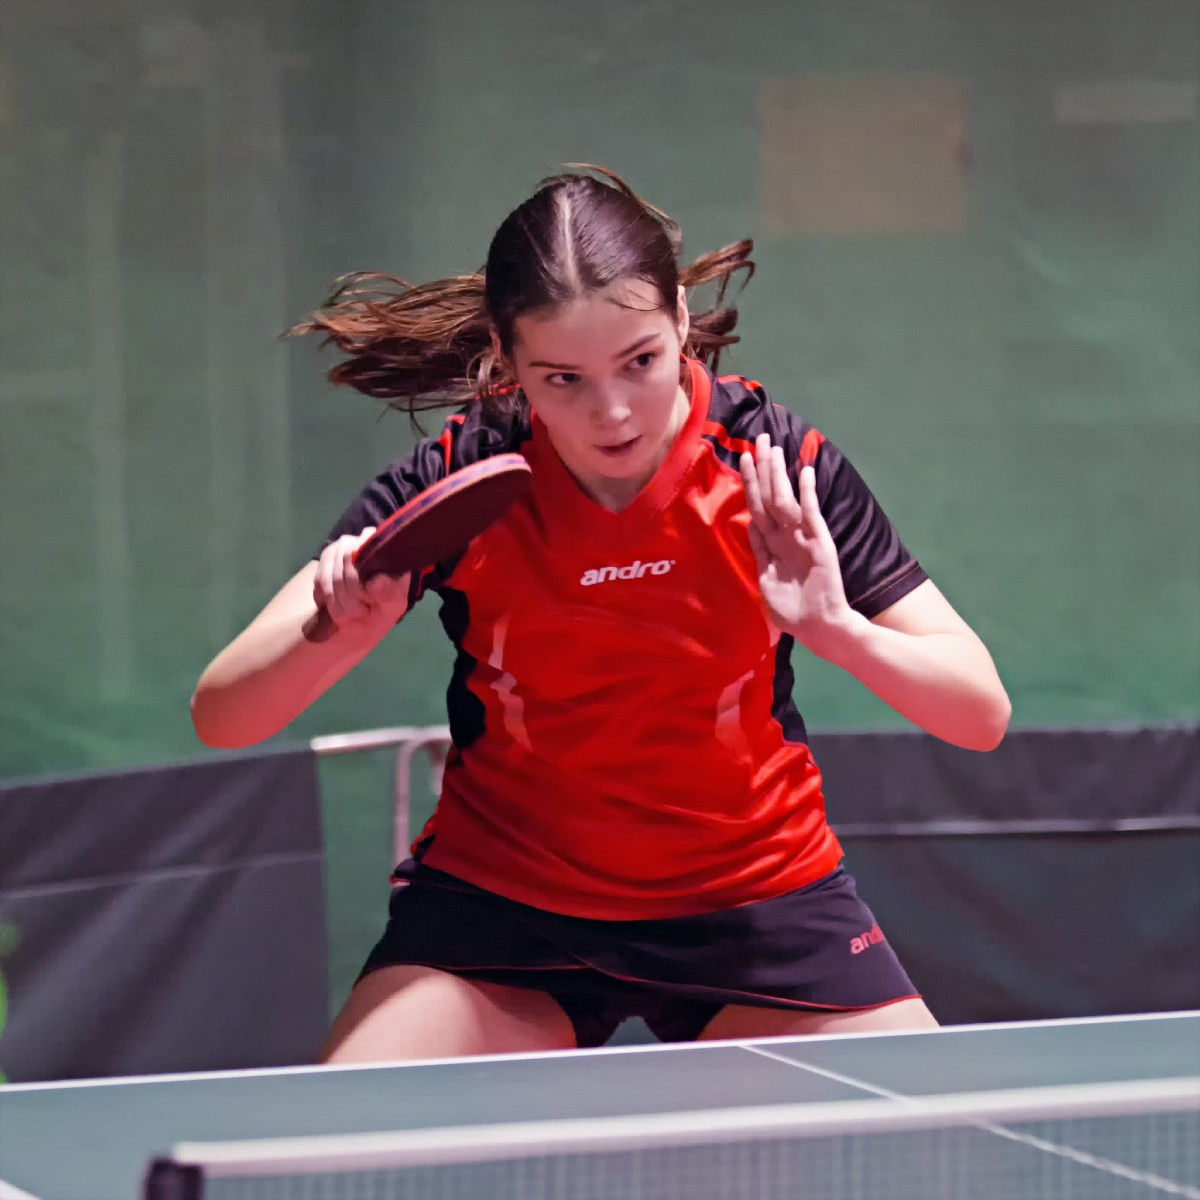 Милена Шатилова. настольный теннис пинг-понг спорт table tennis ping-pong sport girl